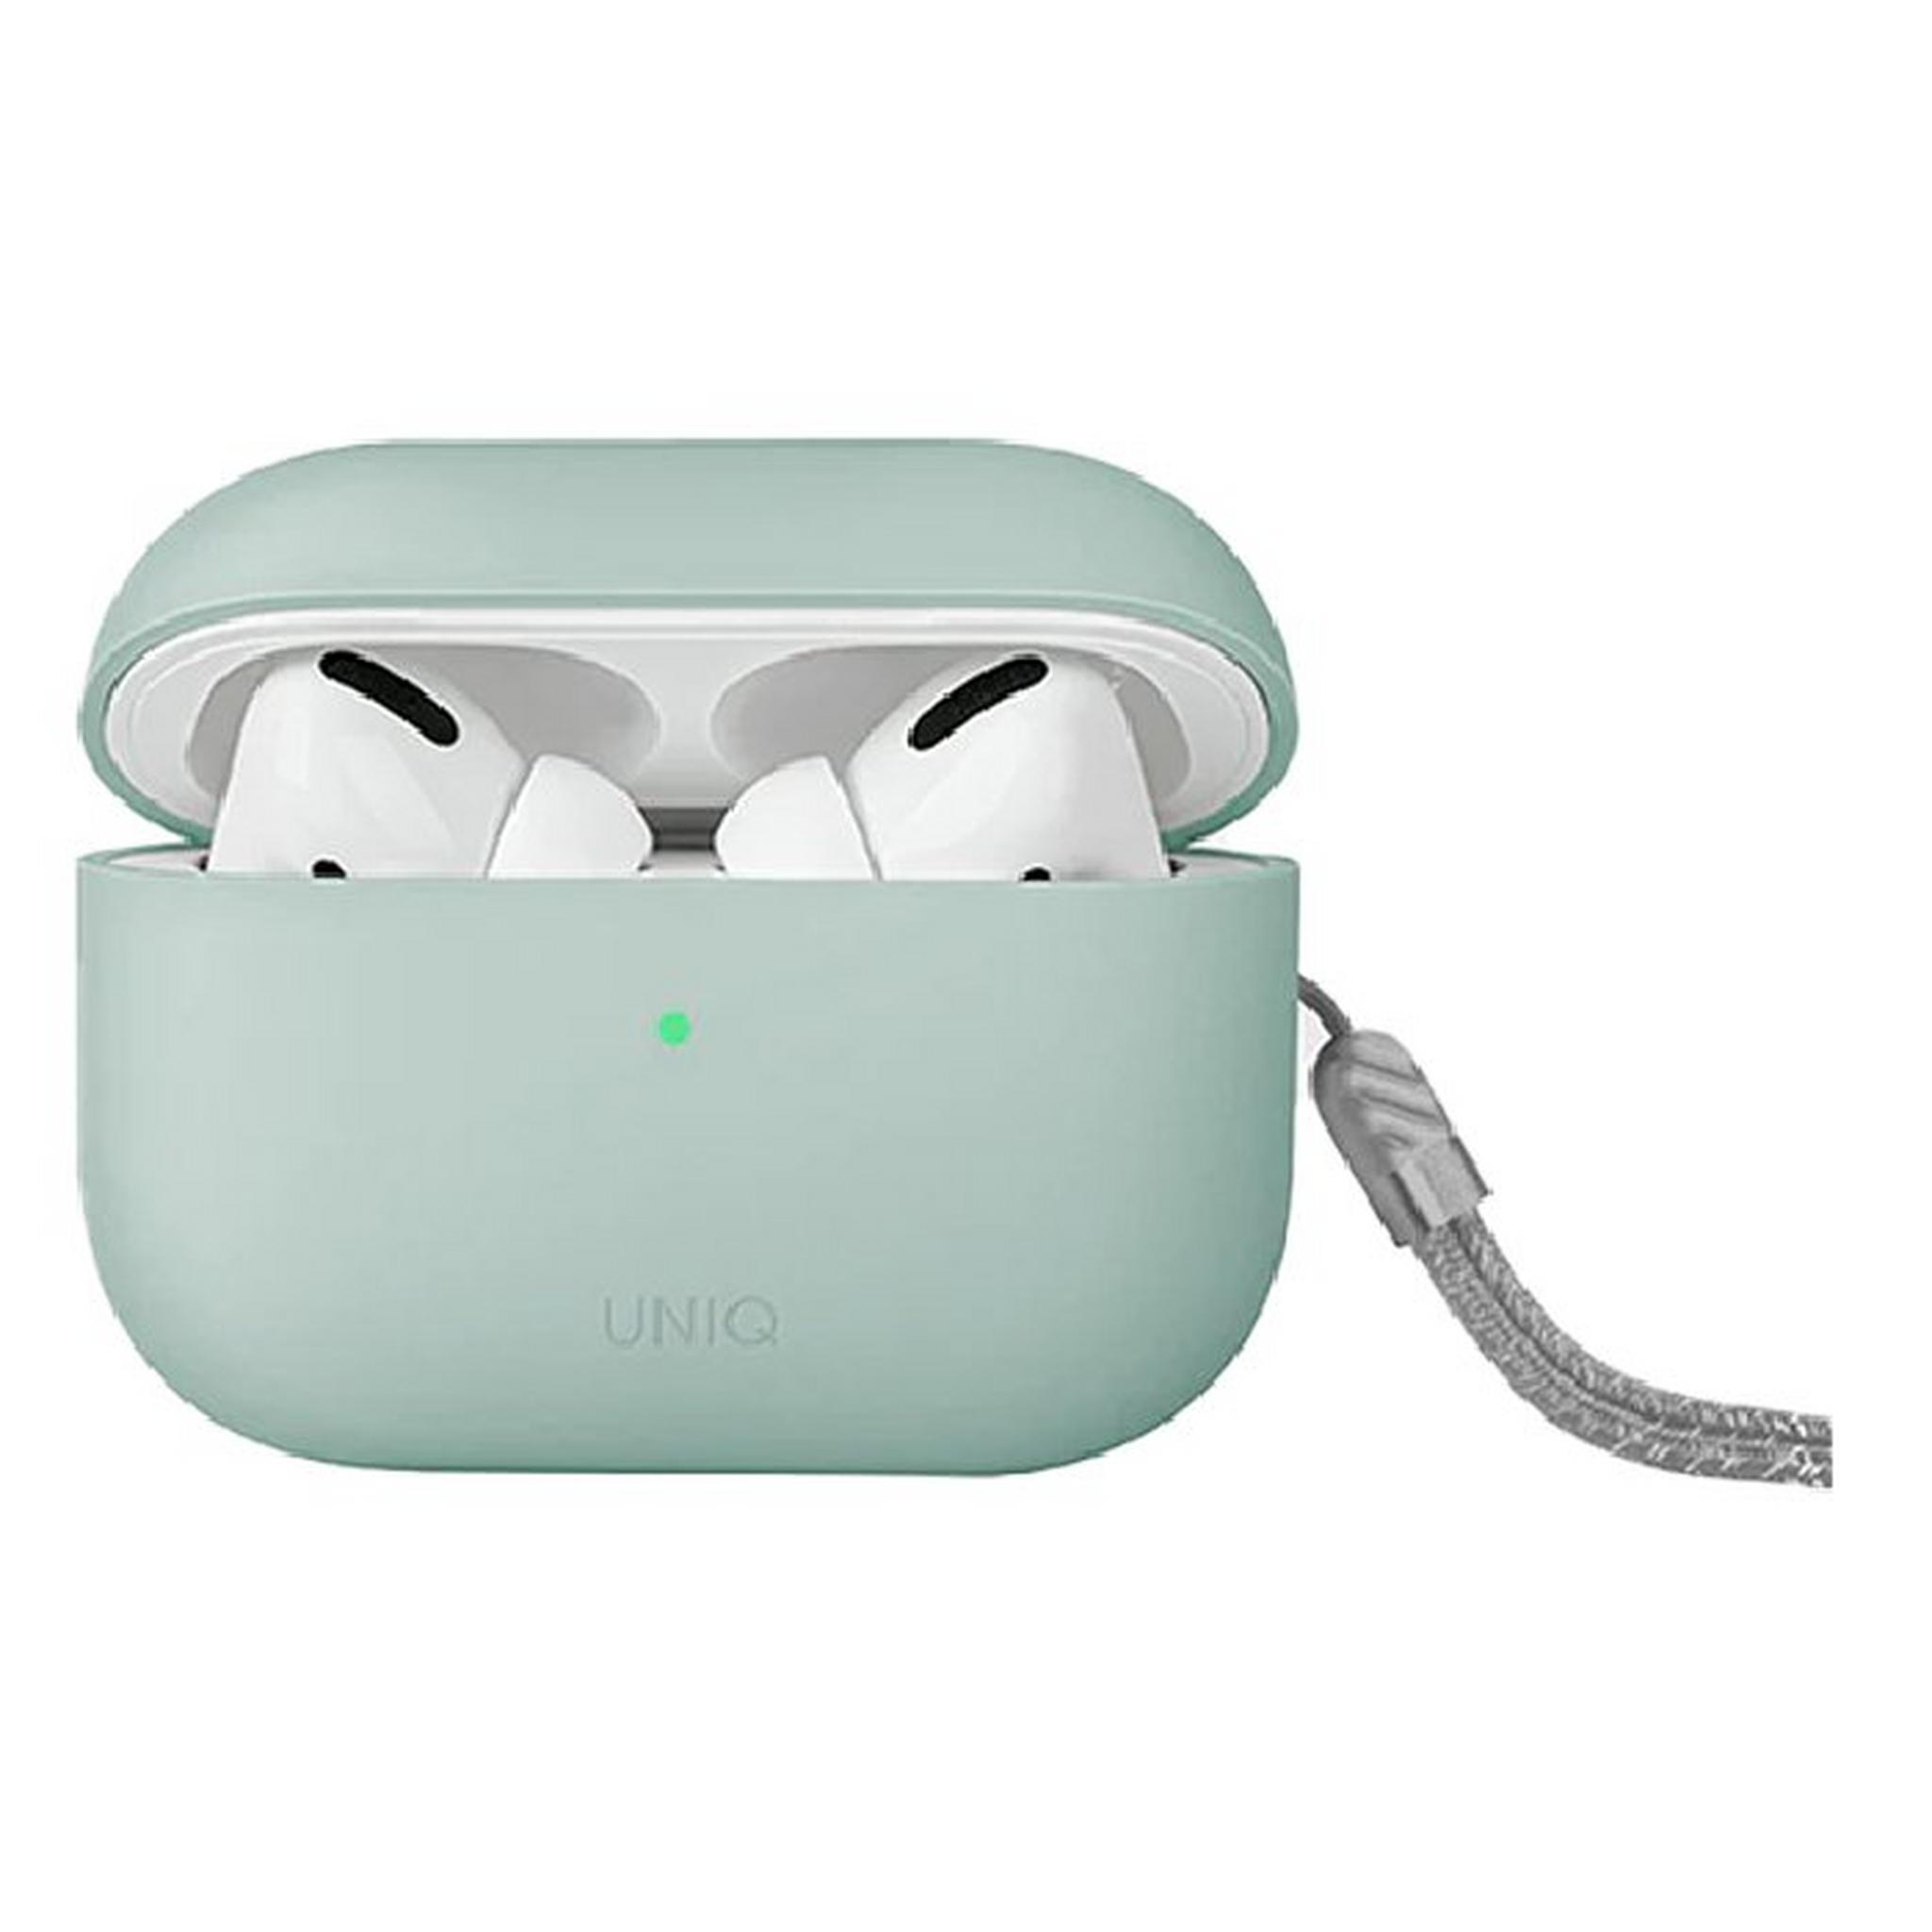 Uniq Lino Silicon Case For Airpods Pro 2 - Green